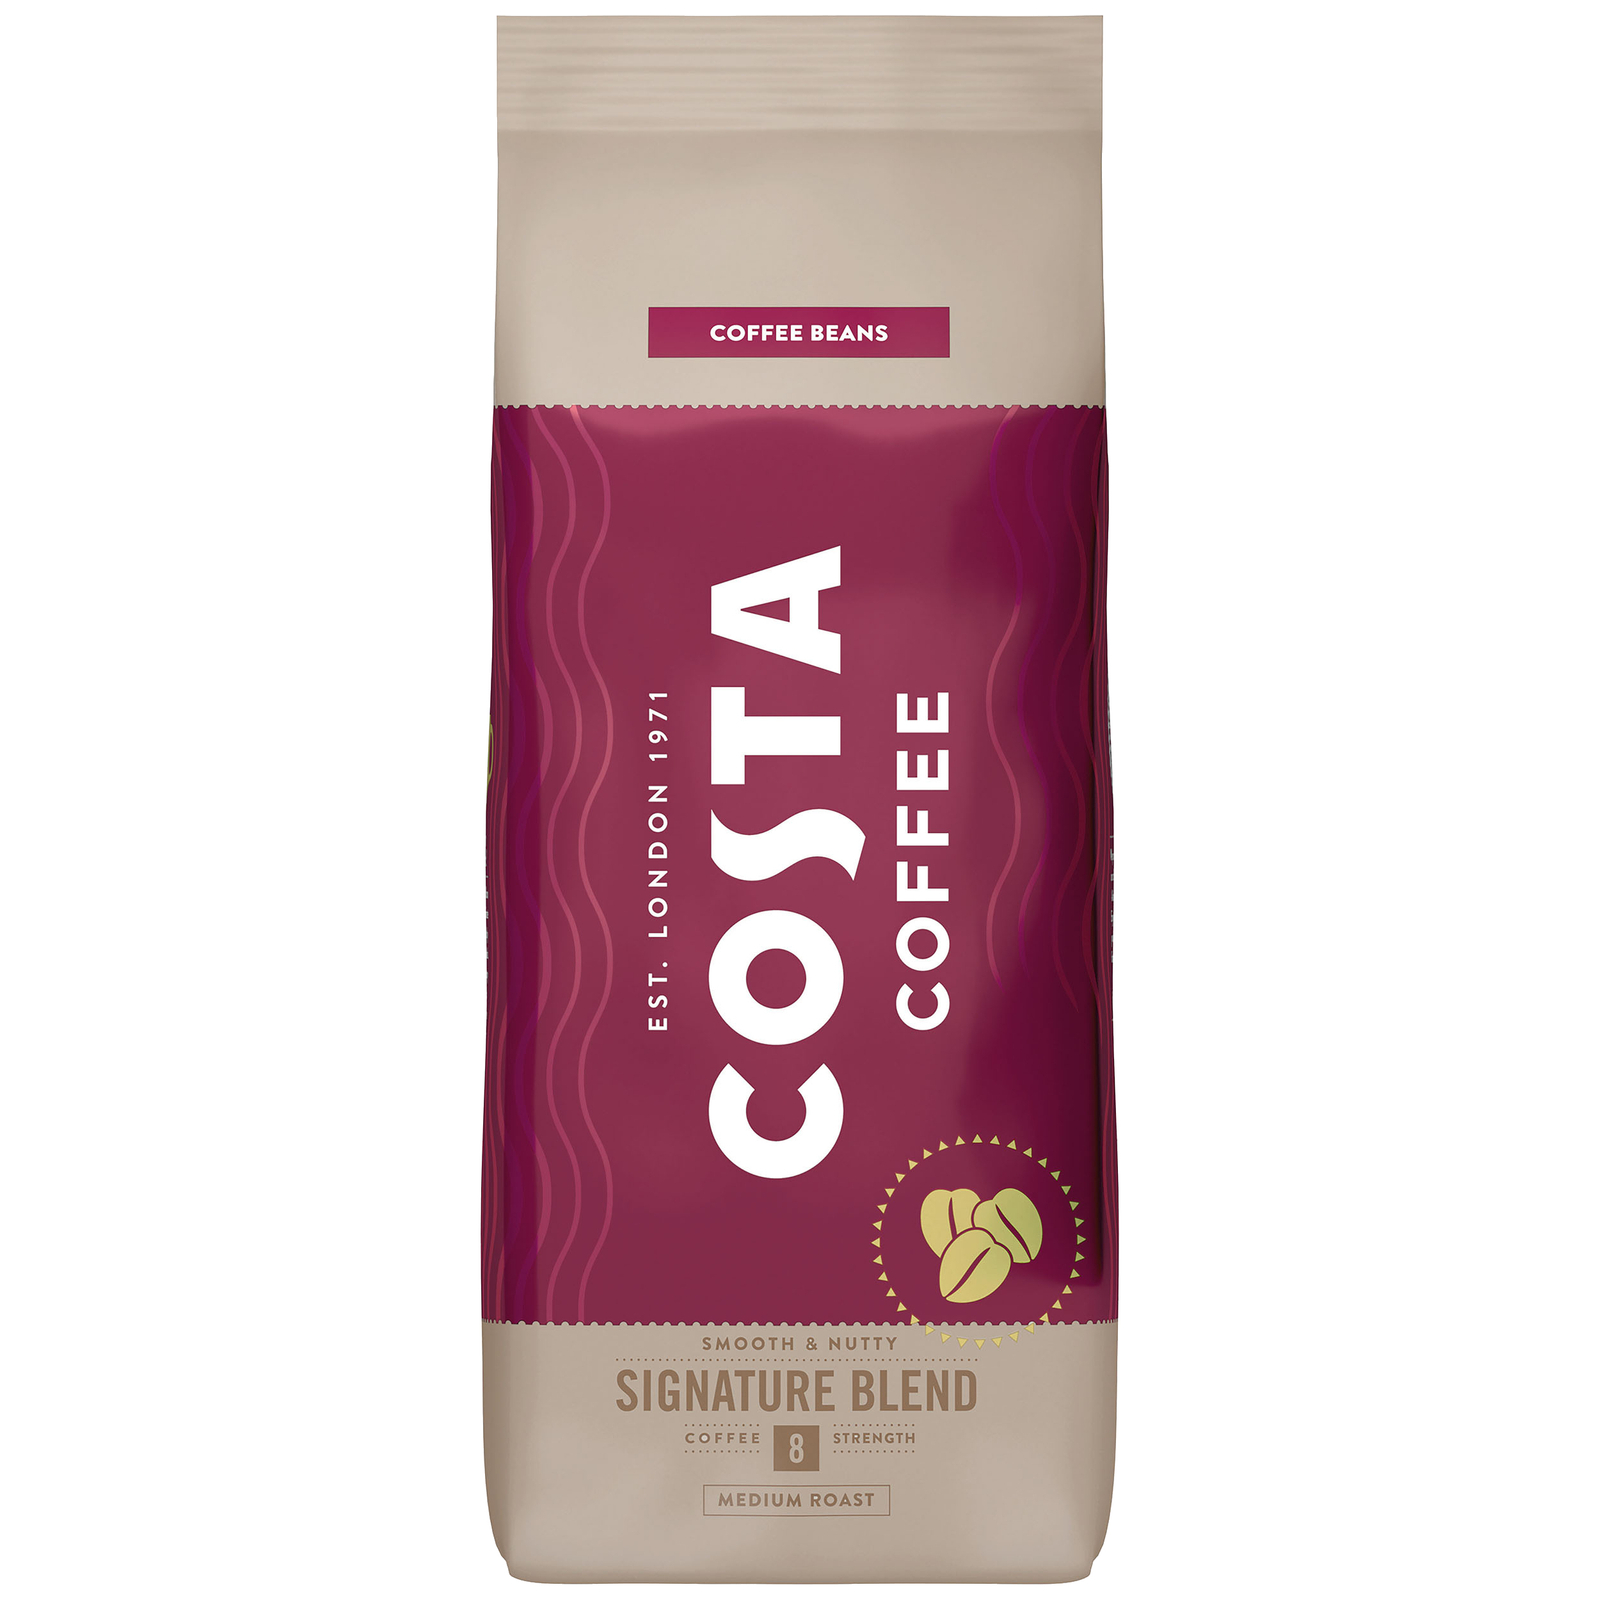 ZESTAW - Kawa ziarnista Costa Coffee Signature Blend 3x1kg